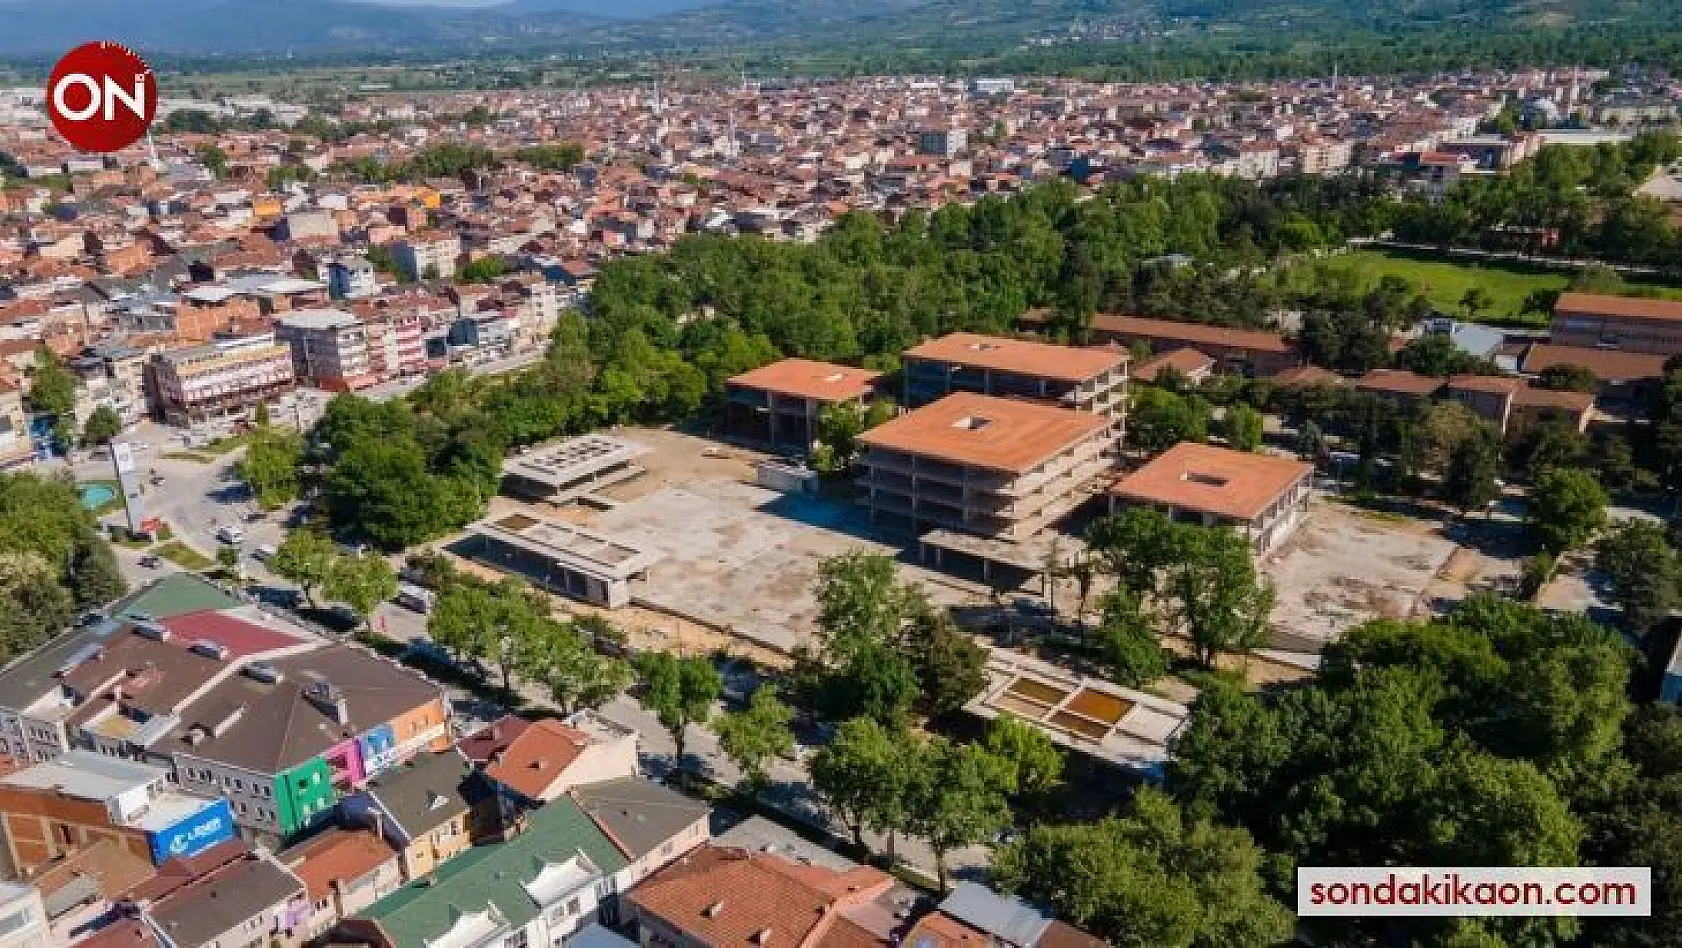 Vali Canbolat yeni belediye binası şantiyesini inceledi